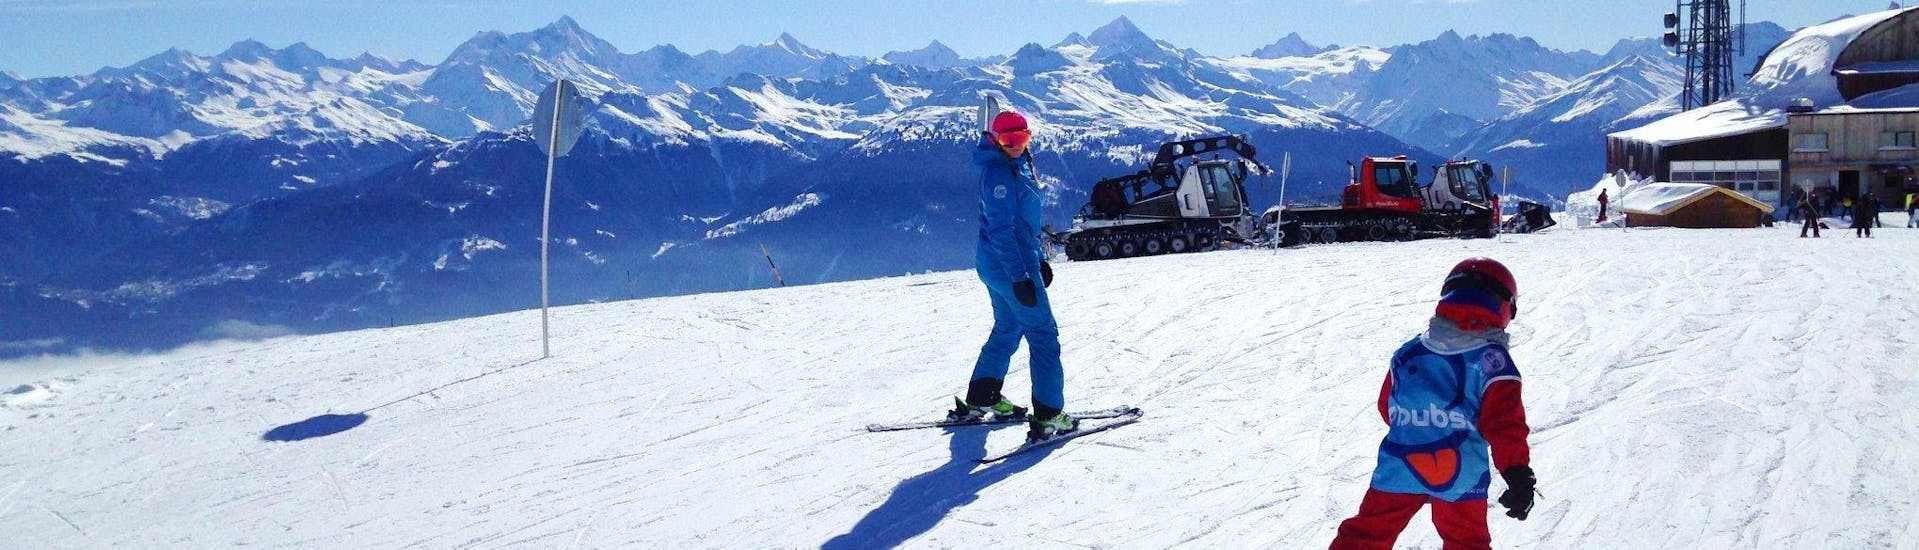 Lezioni private di sci per bambini a partire da 2 anni principianti assoluti.